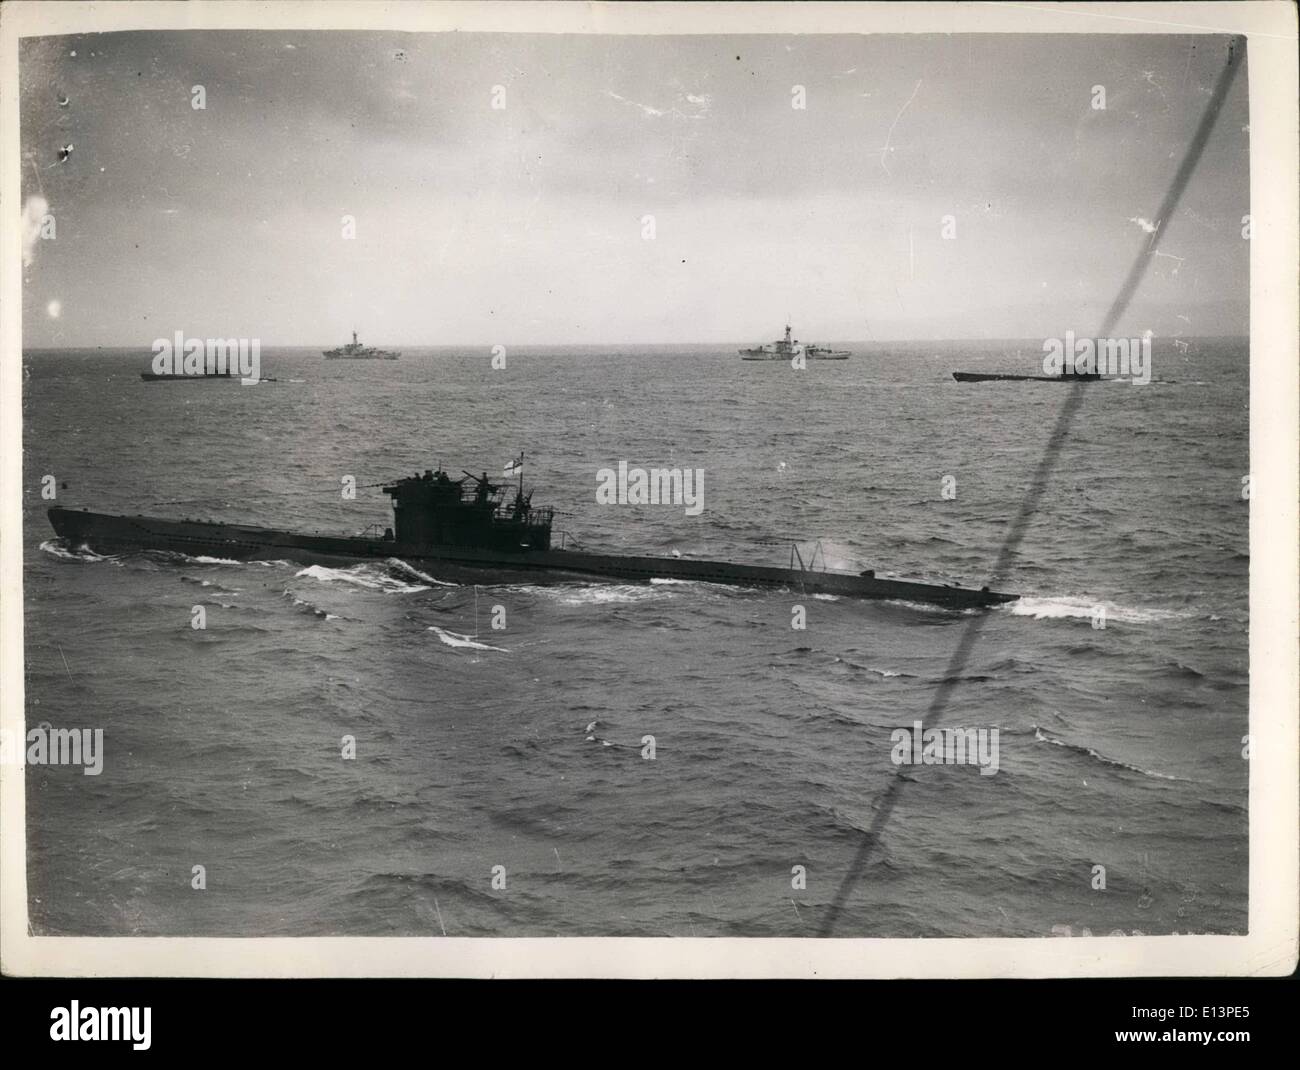 Mar. 22, 2012 - Plus d'U-Boote arrivent à Londonderry. Les U-Boot, escorté par des navires de guerre britanniques sont arrivés à Londonderry. Photo show : Trois des U-Boat avec escort sur leur façon de Londonderry. Banque D'Images